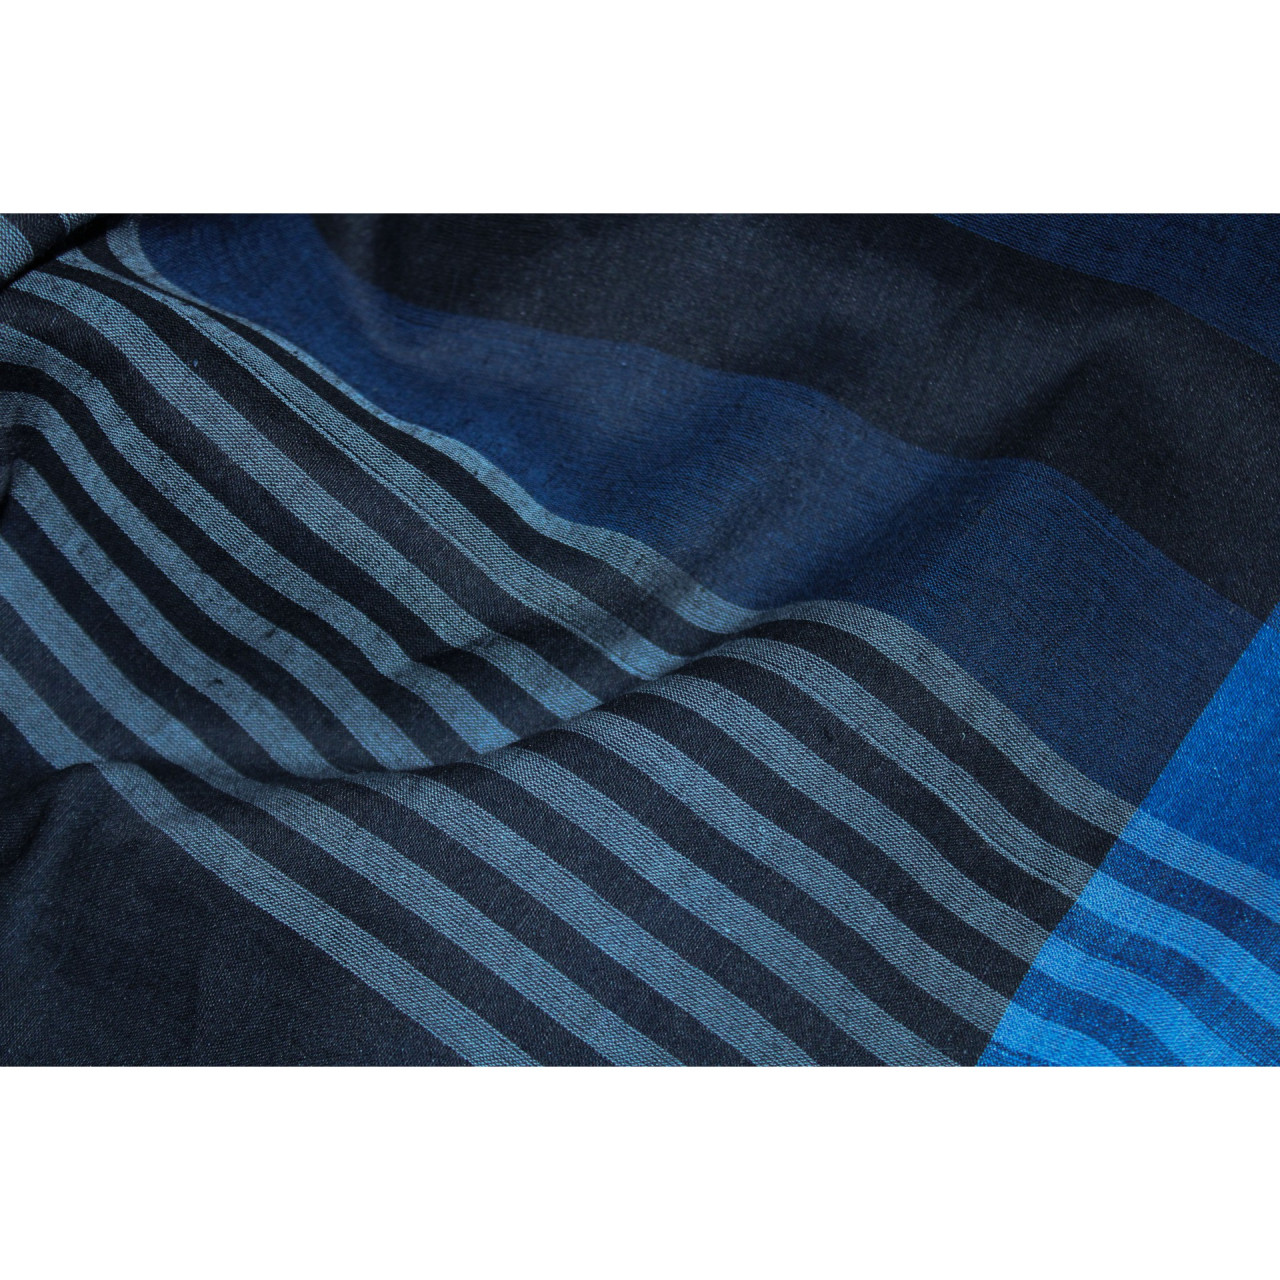 (2073) Khadi  and linen Azo-free dyed stole from Shantipur - Indigo, black, blue, white, stripes, plain